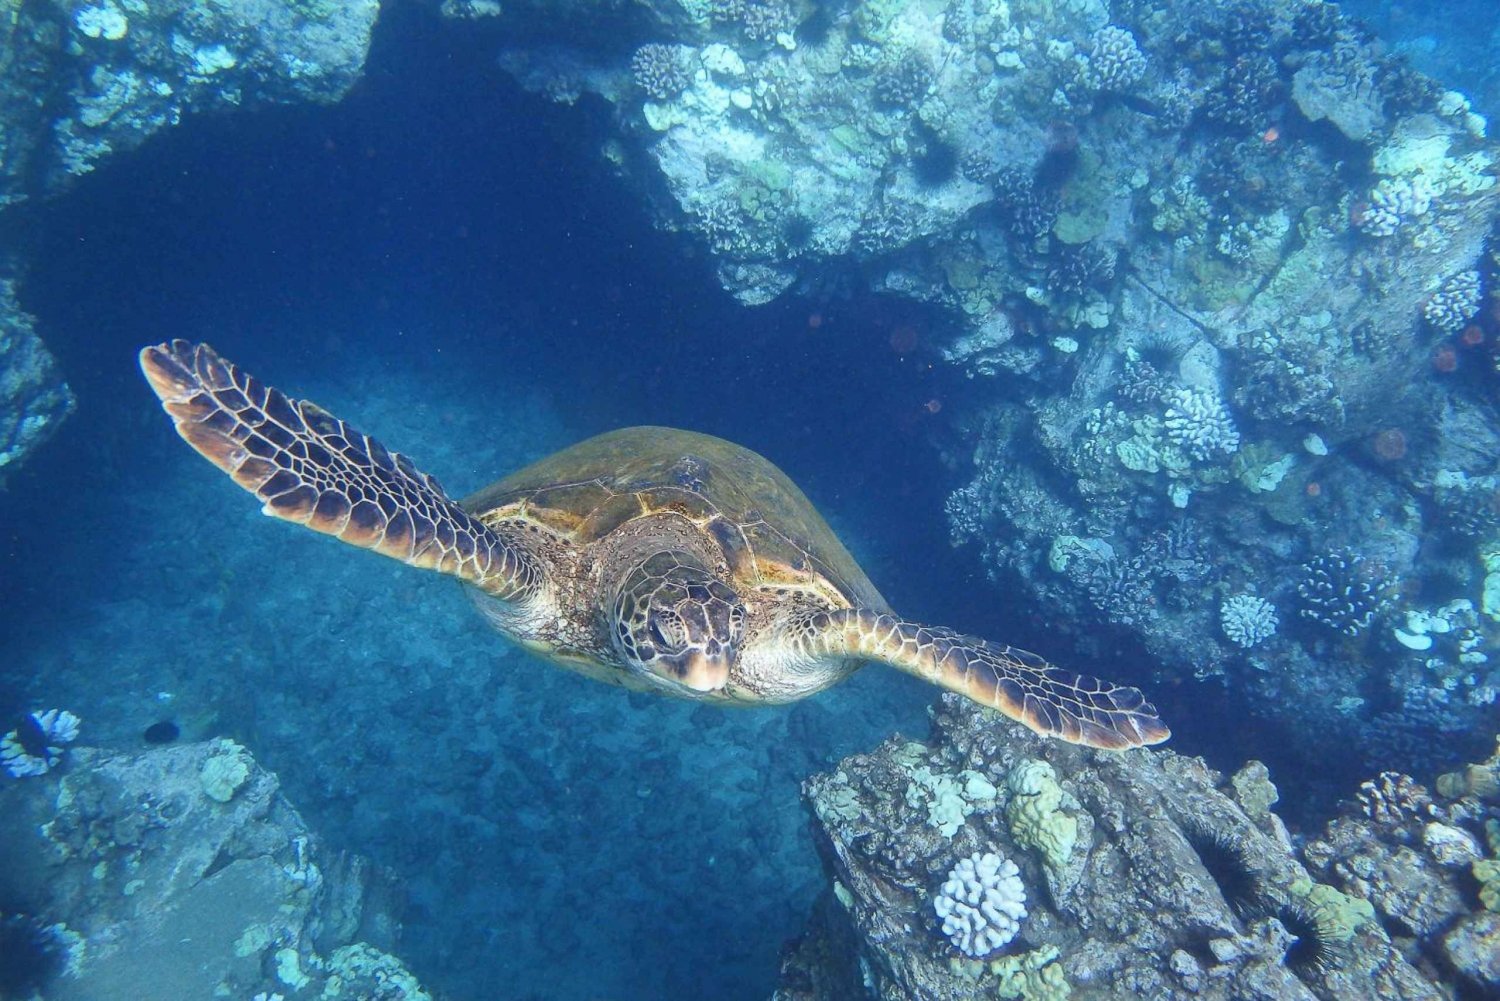 Fra Ma'alaea: Snorkling i skildpaddebyen om bord på Quicksilver